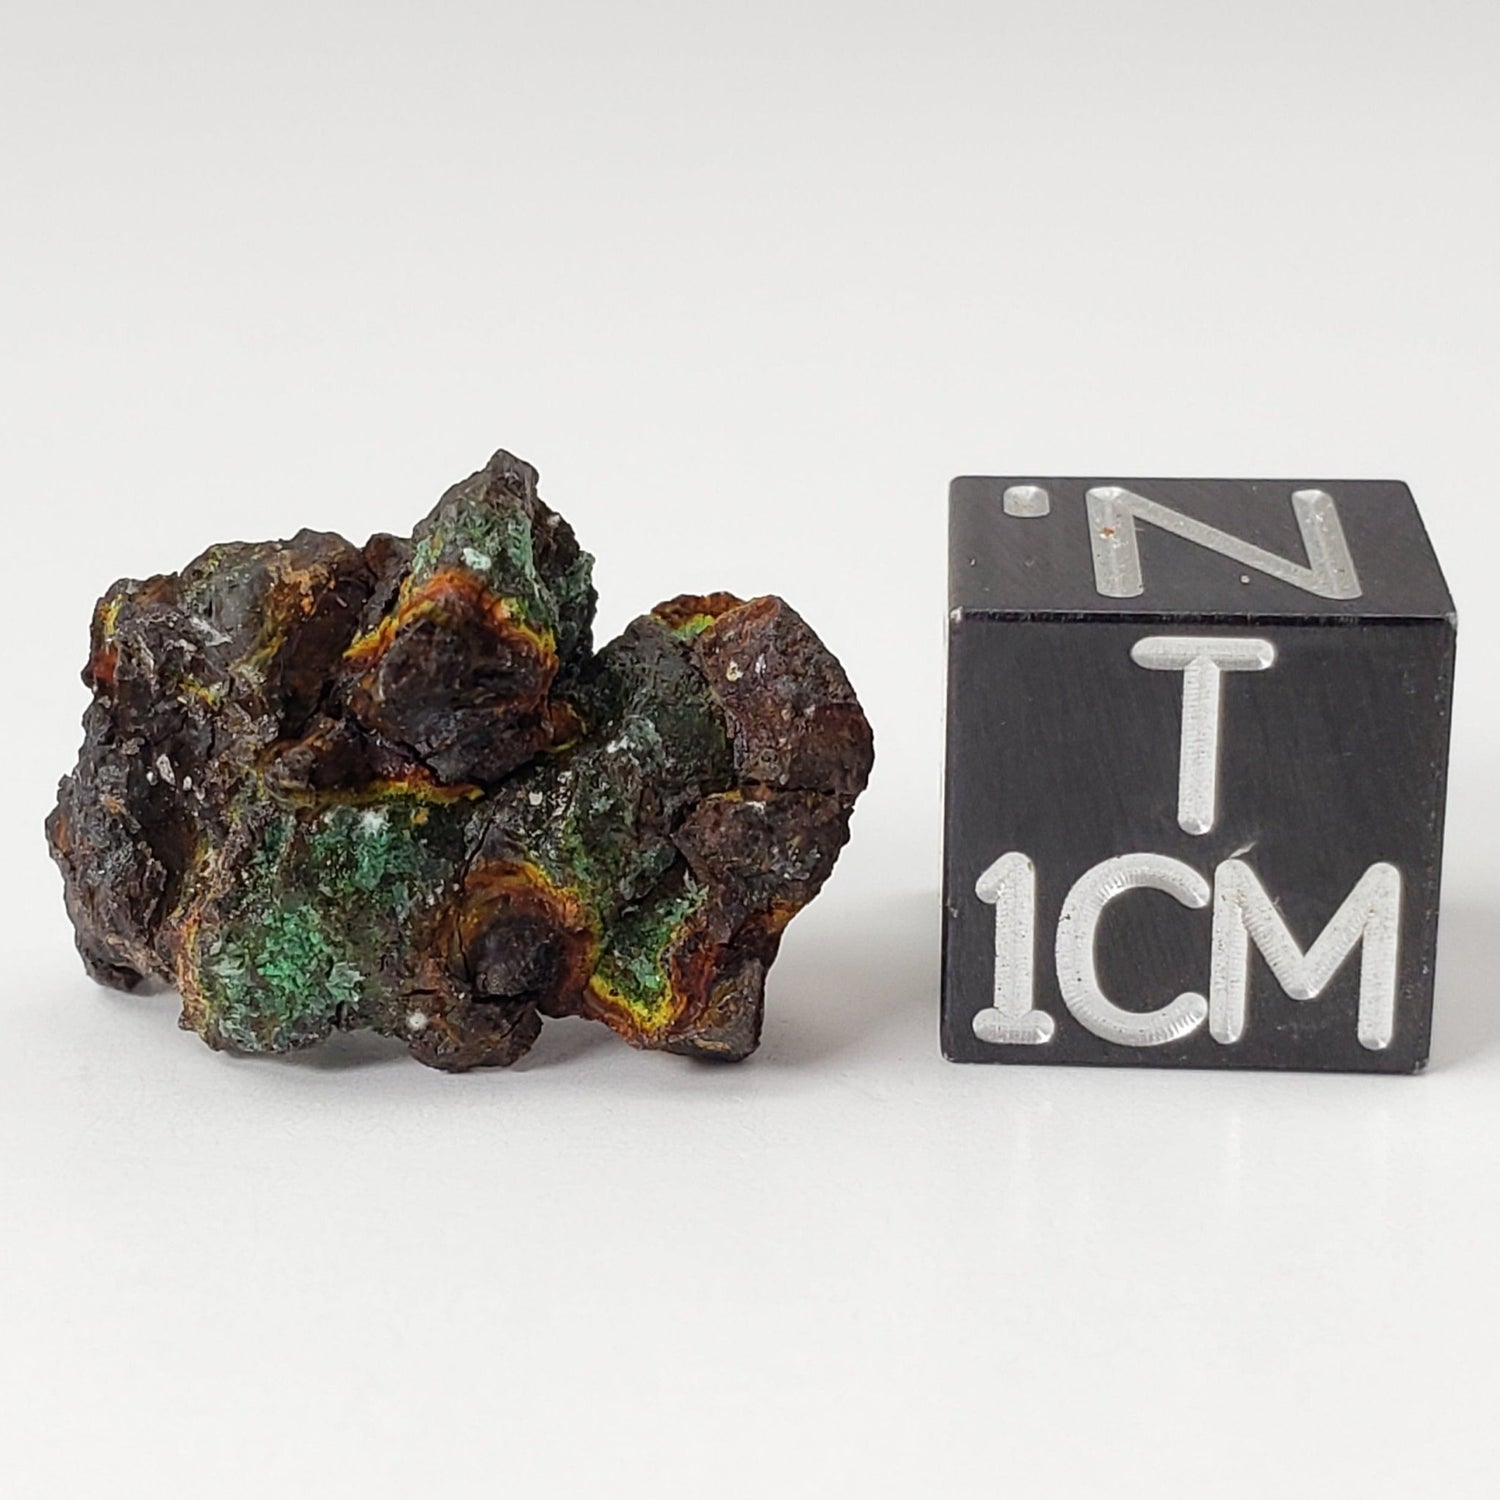 Vaca Muerta Meteorite | 2.4 Grams | Individual | Mesosiderite A1 | Chile